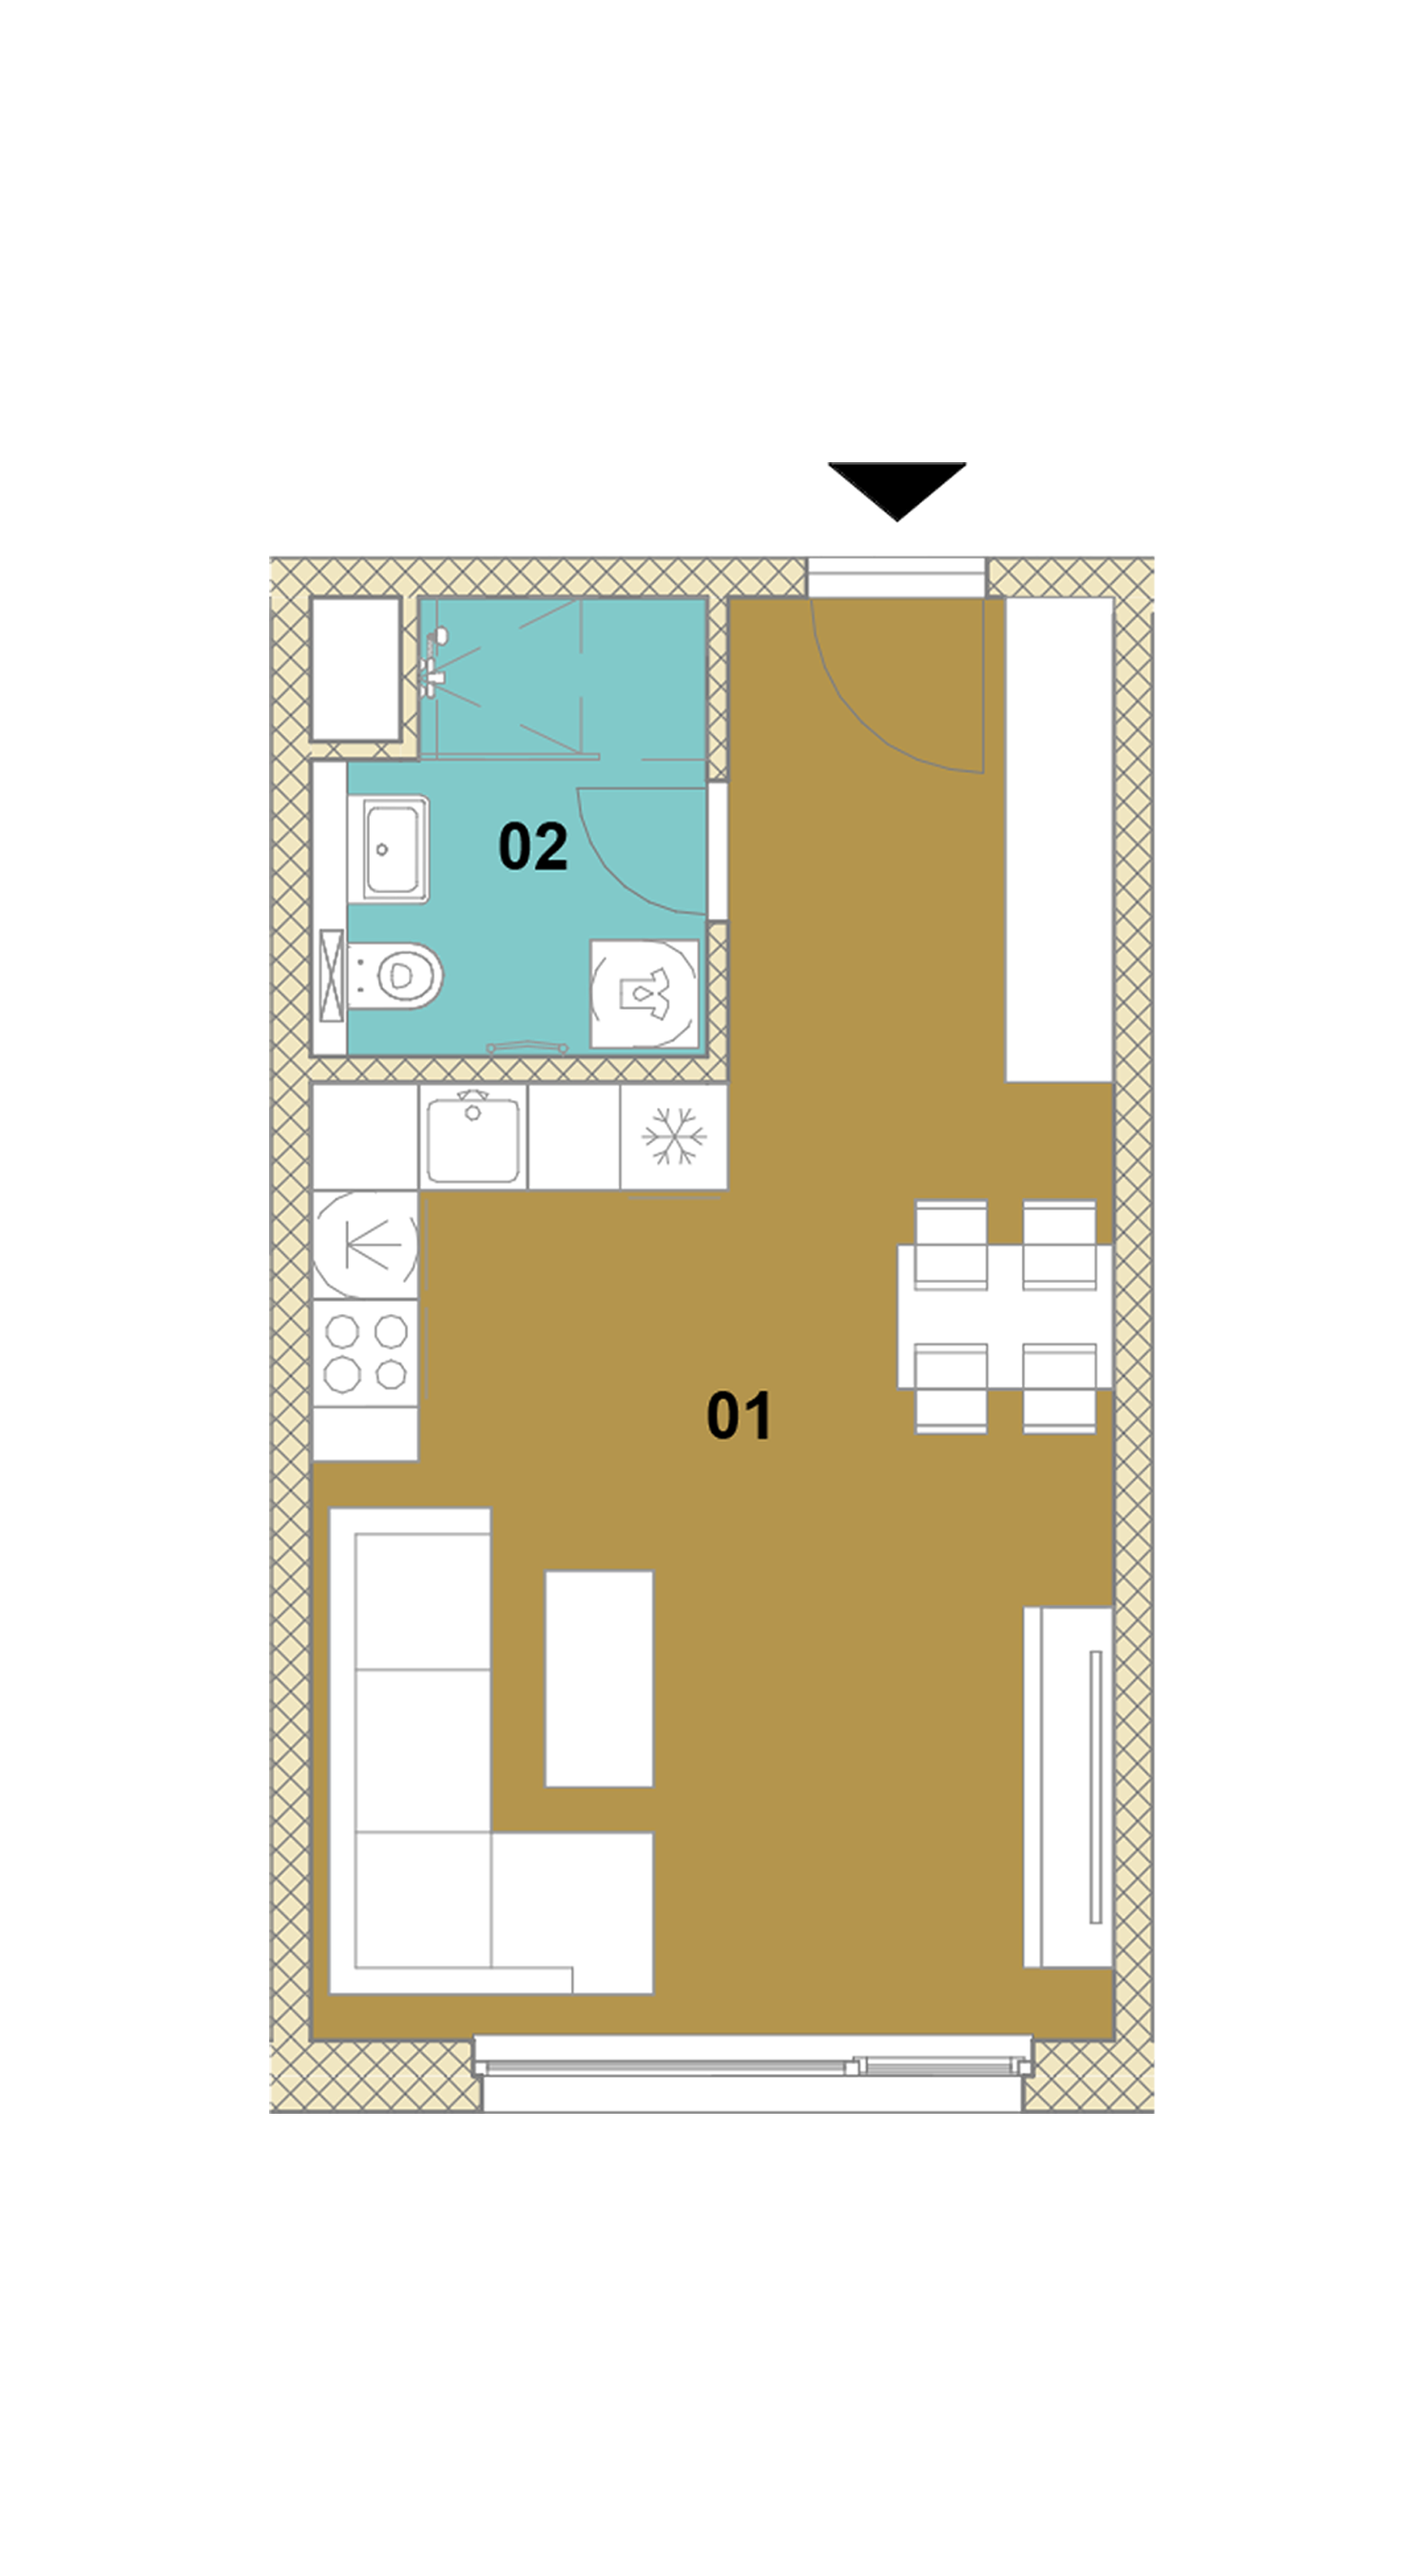 Jednoizbový byt E2-203